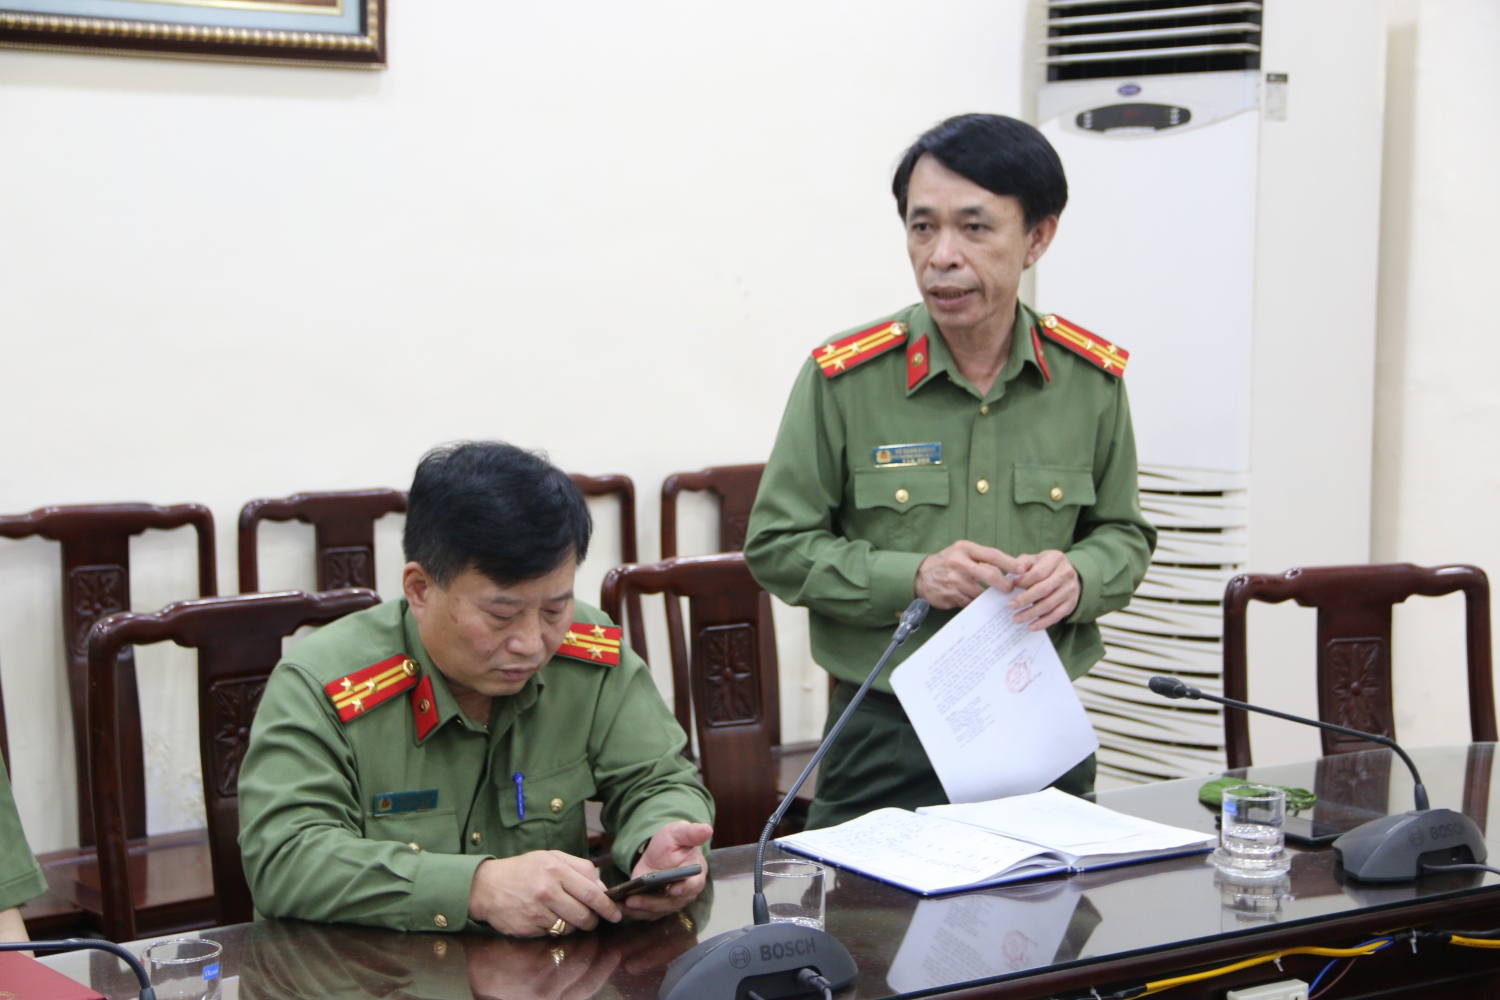 PVTrans trao tặng 40 máy tính cho cán bộ, chiến sỹ Công an quận Ba Đình